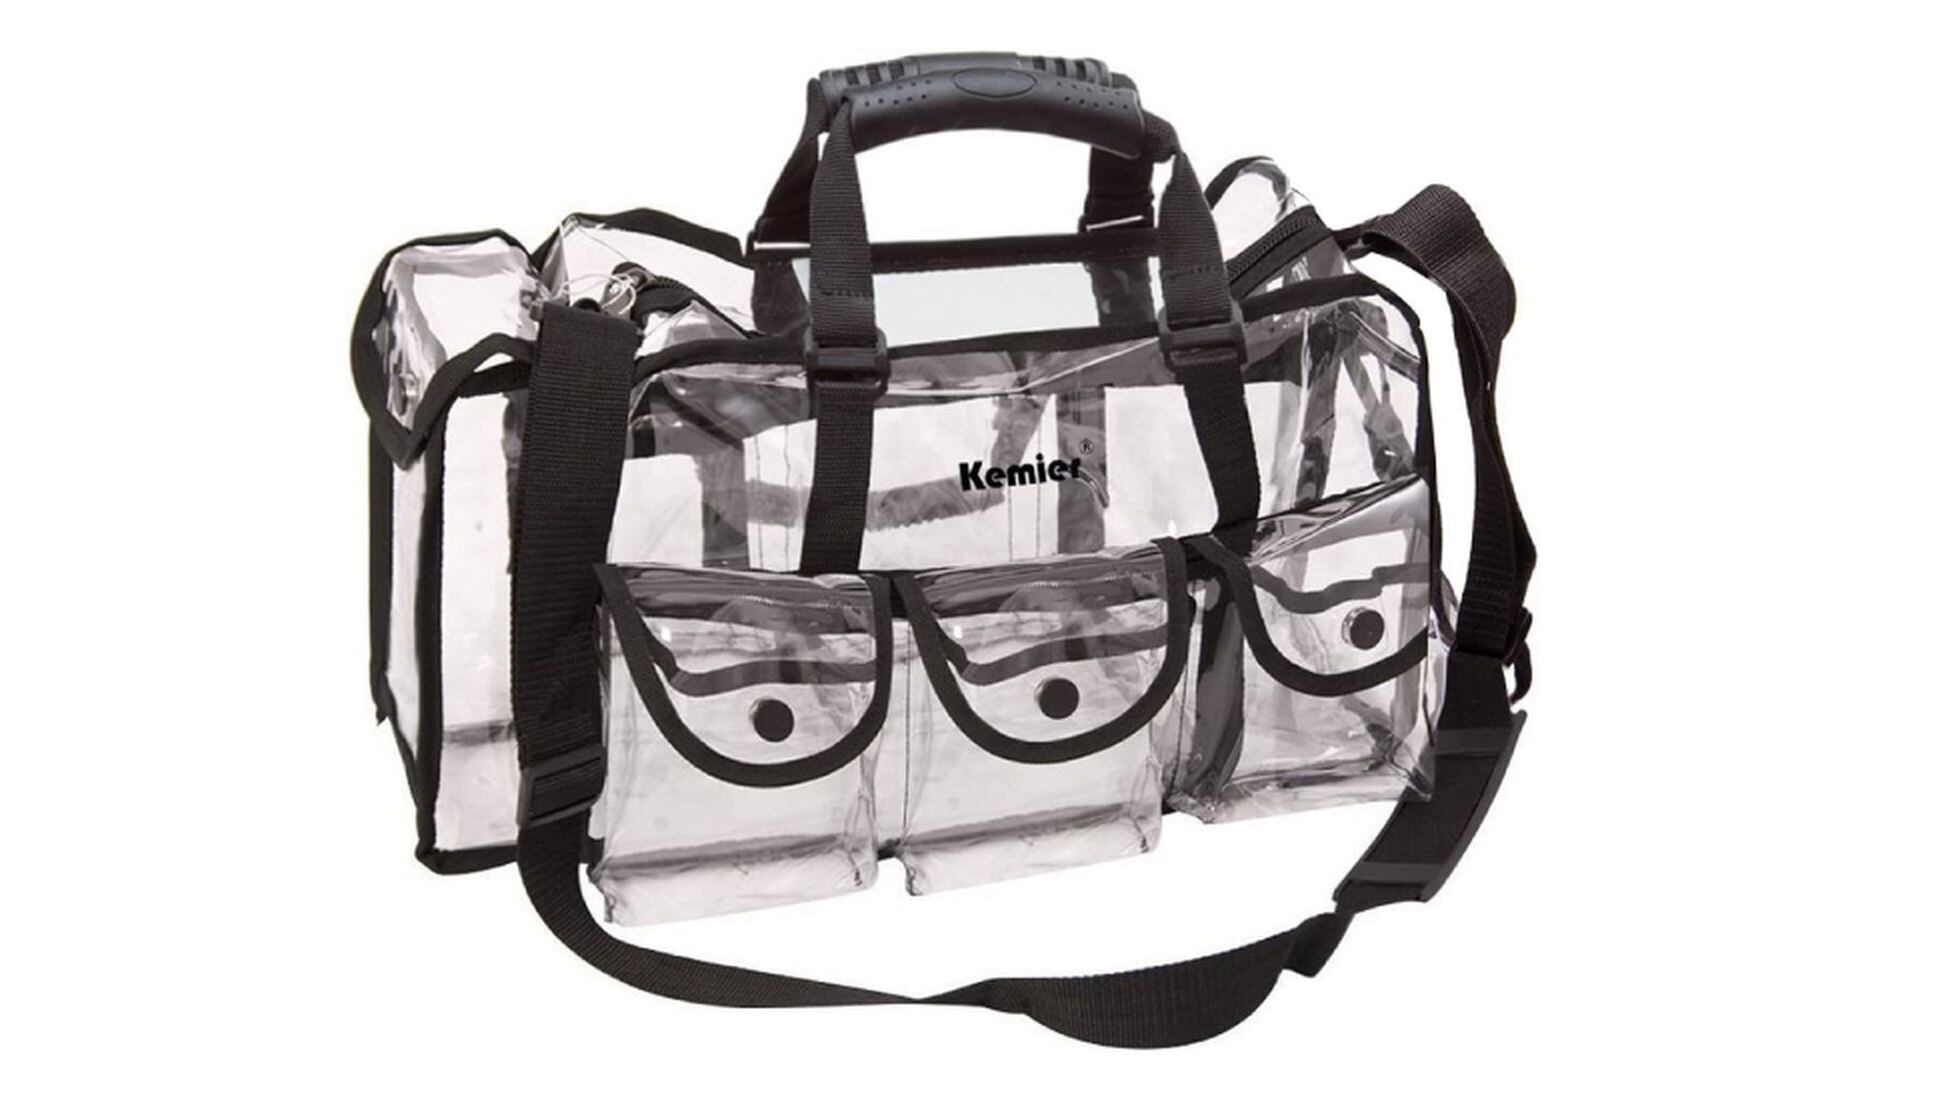 Neceser transparente - 1 bolsa de viaje transparente para transportar  líquidos, bolsa de avión para líquidos femeninos y masculinos oso de fresa  Electrónica